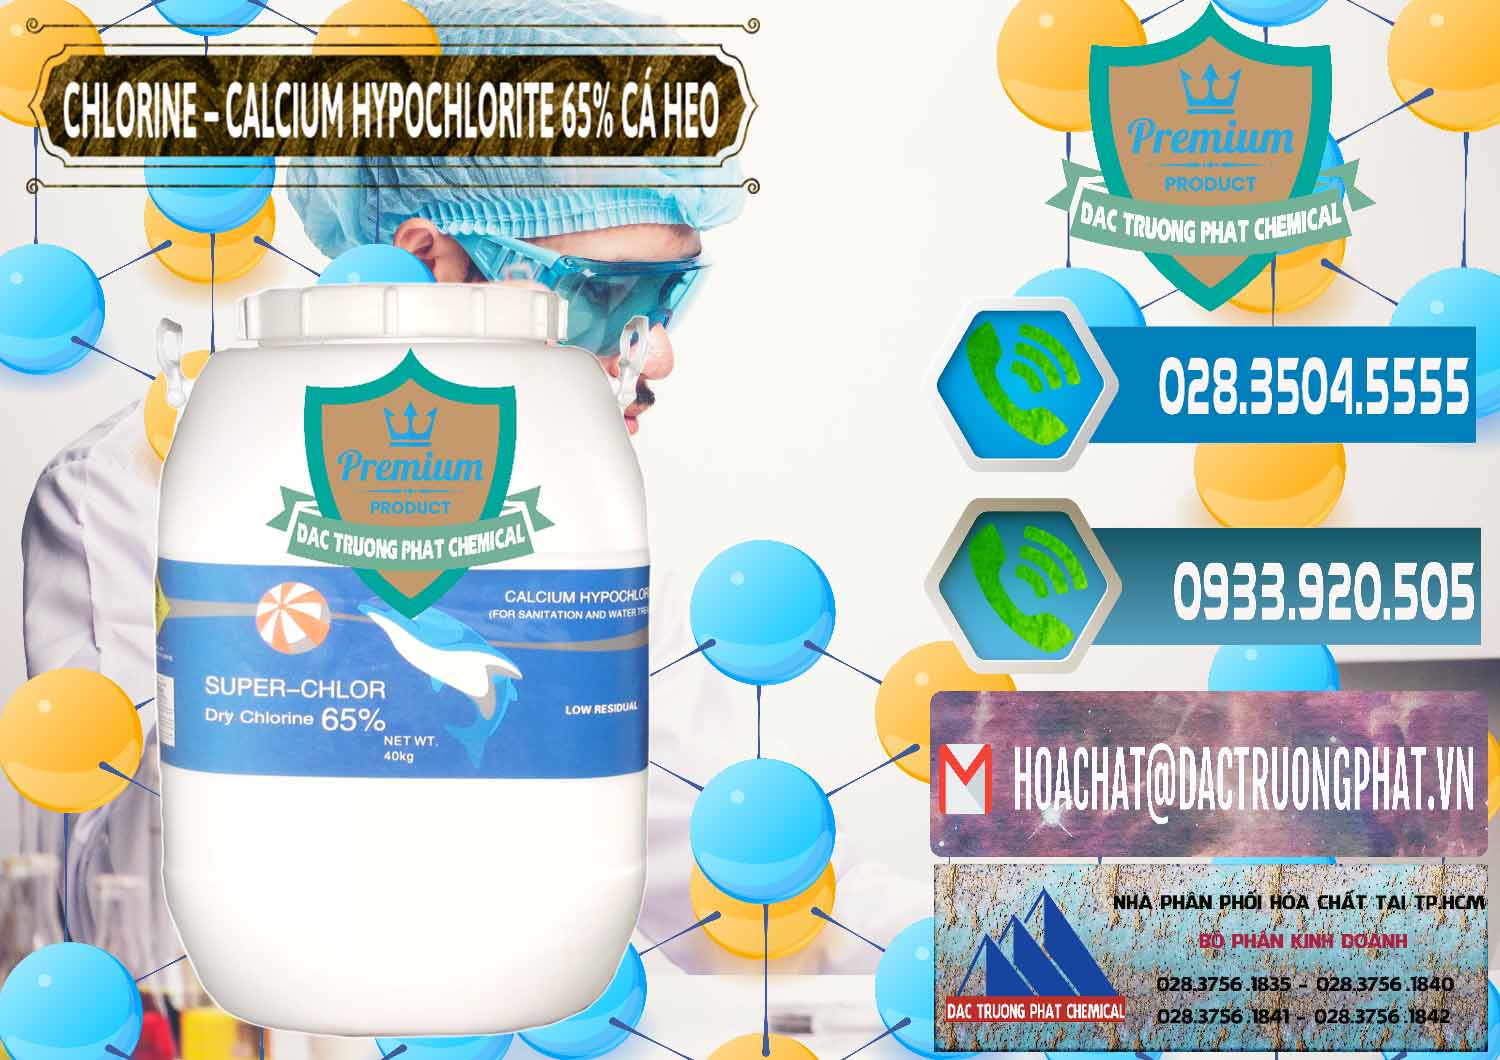 Công ty chuyên kinh doanh - bán Clorin - Chlorine Cá Heo 65% Trung Quốc China - 0053 - Nơi chuyên kinh doanh - cung cấp hóa chất tại TP.HCM - congtyhoachat.net